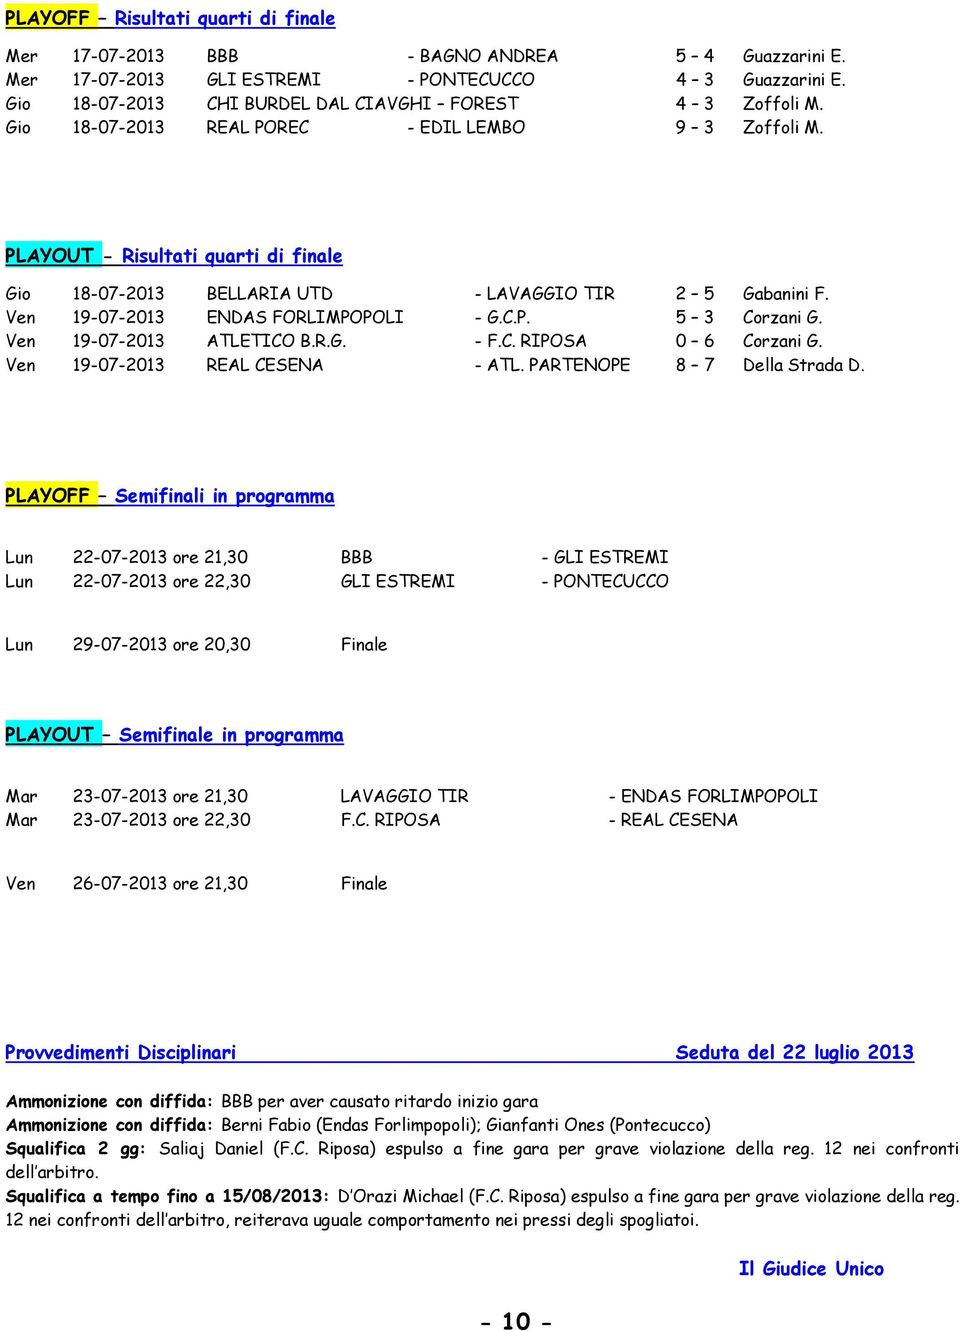 PLAYOUT - Risultati quarti di finale Gio 18-07-2013 BELLARIA UTD - LAVAGGIO TIR 2 5 Gabanini F. Ven 19-07-2013 ENDAS FORLIMPOPOLI - G.C.P. 5 3 Corzani G. Ven 19-07-2013 ATLETICO B.R.G. - F.C. RIPOSA 0 6 Corzani G.